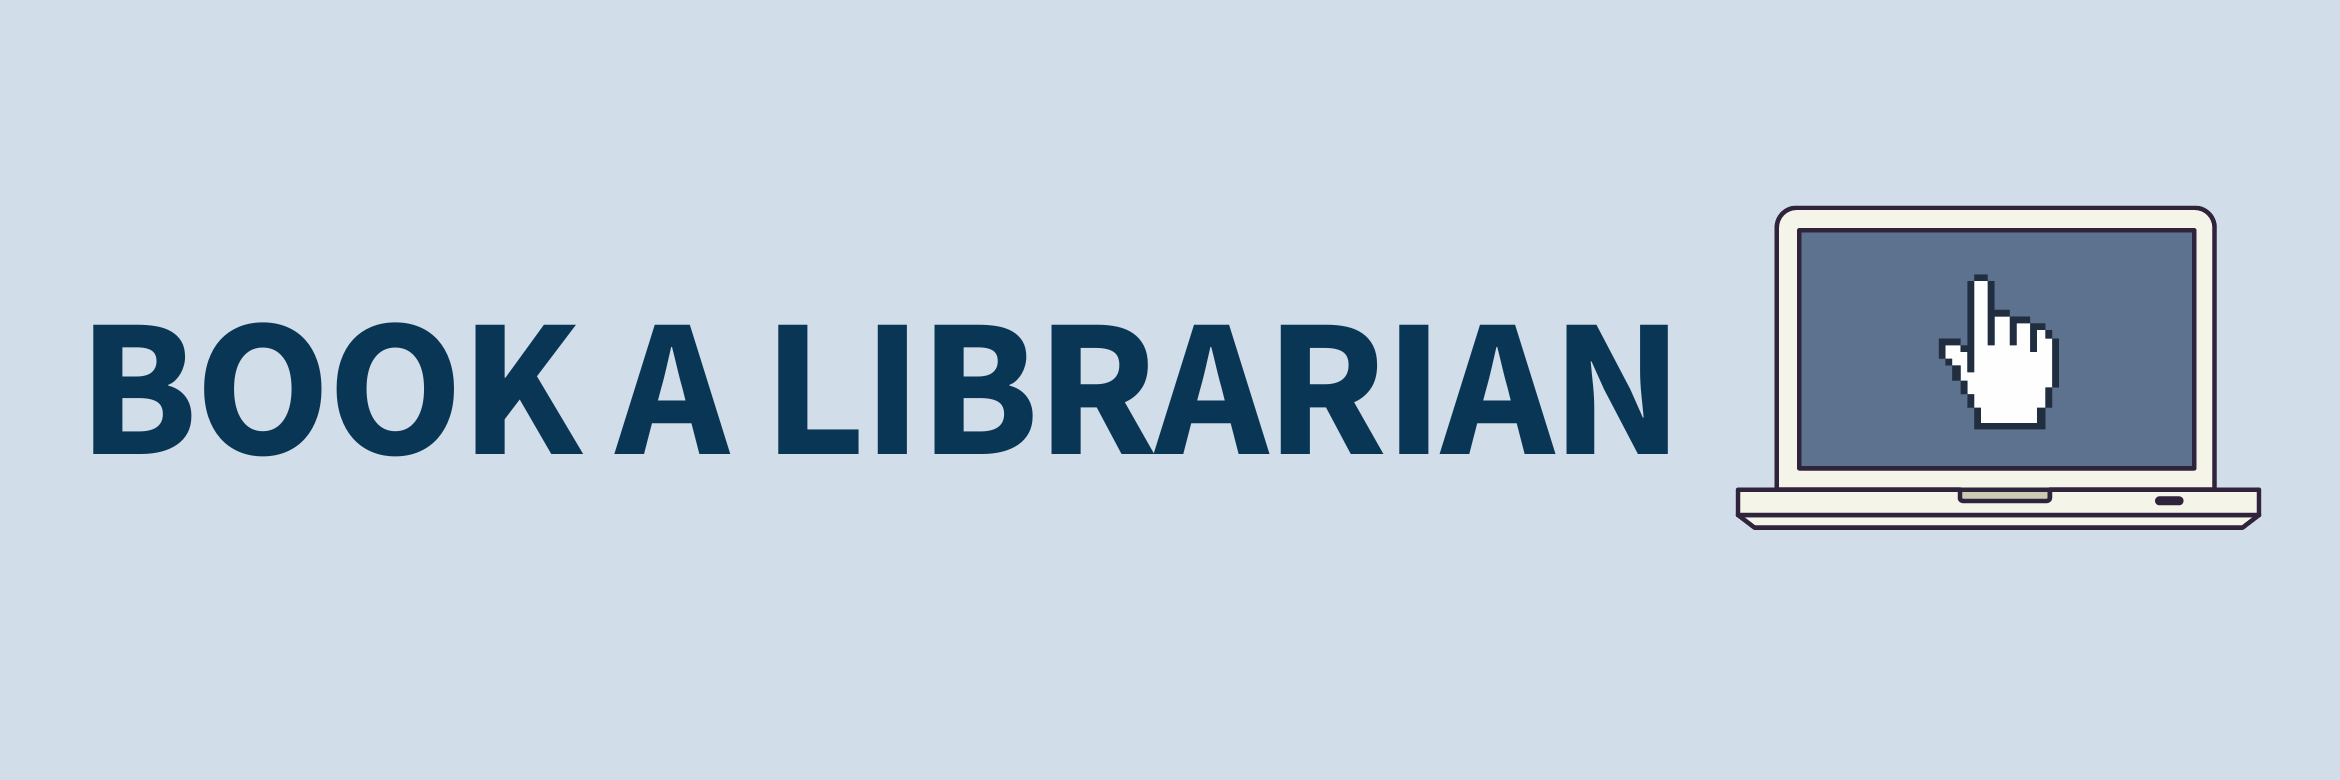 Book a Librarain header